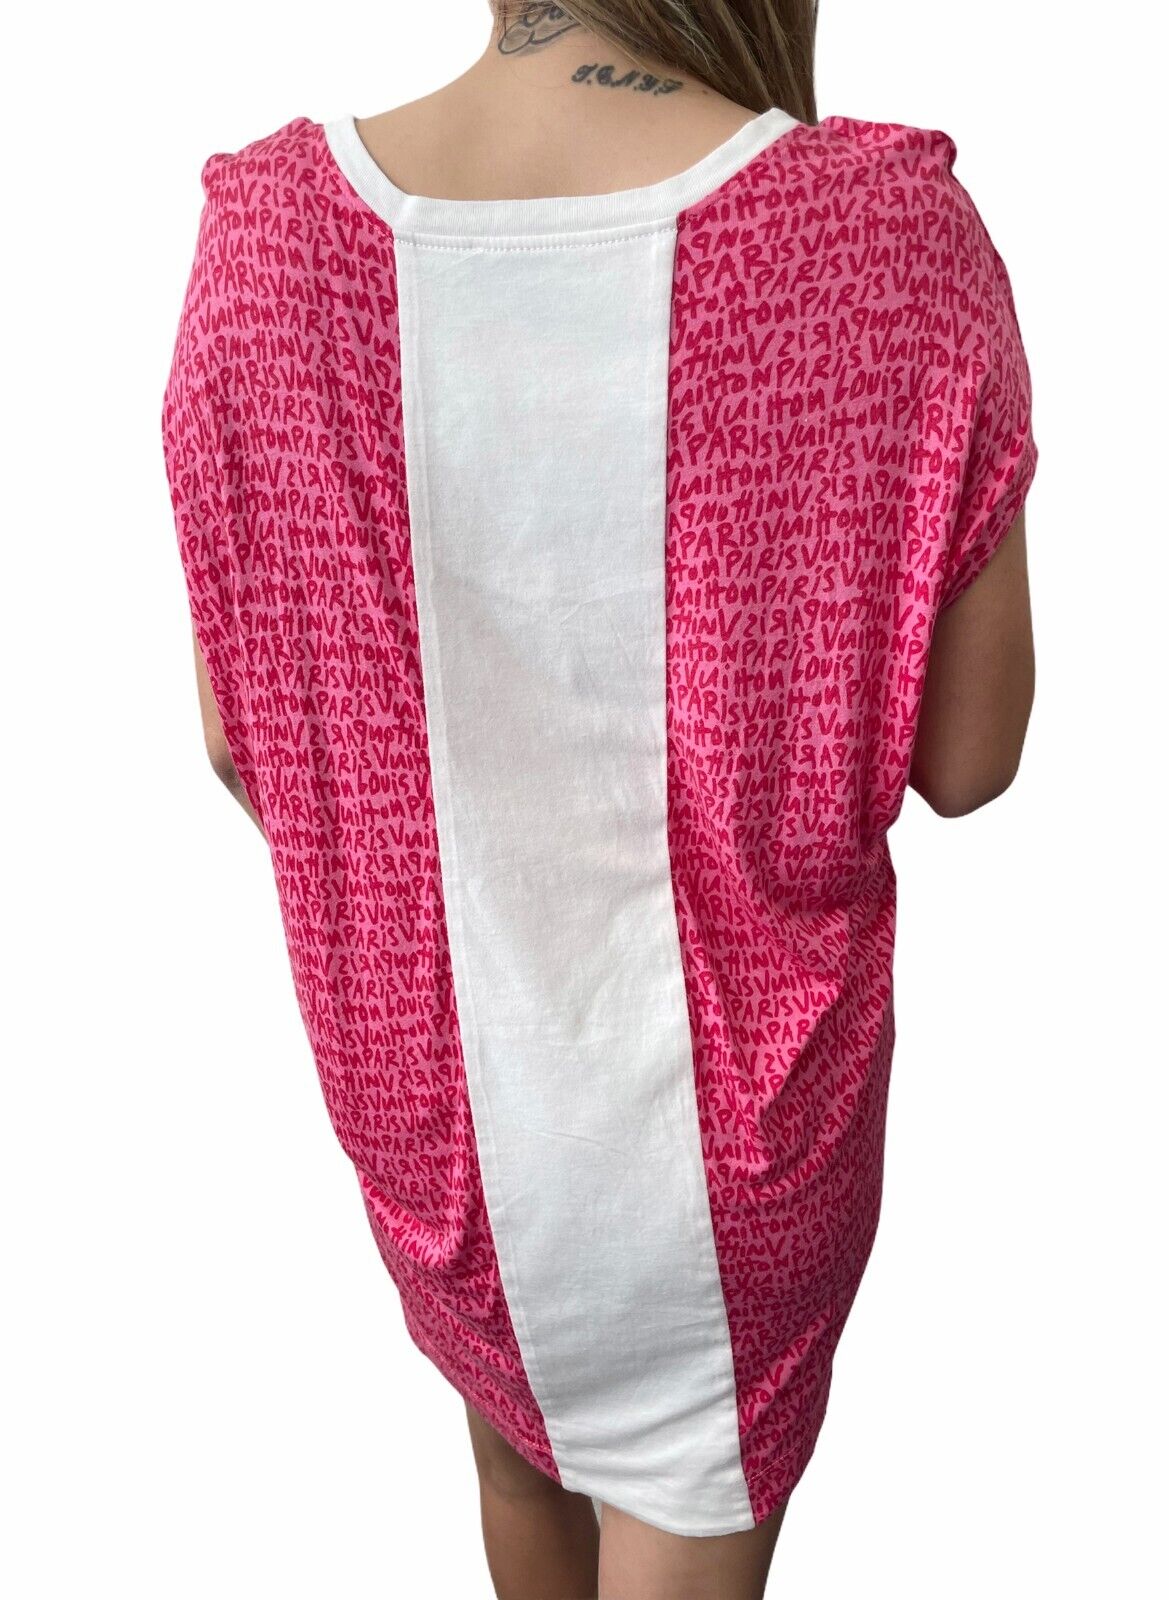 LOUIS VUITTON Vintage Graffiti Logo Tunic #S Top Dress Pocket Pink Rank A